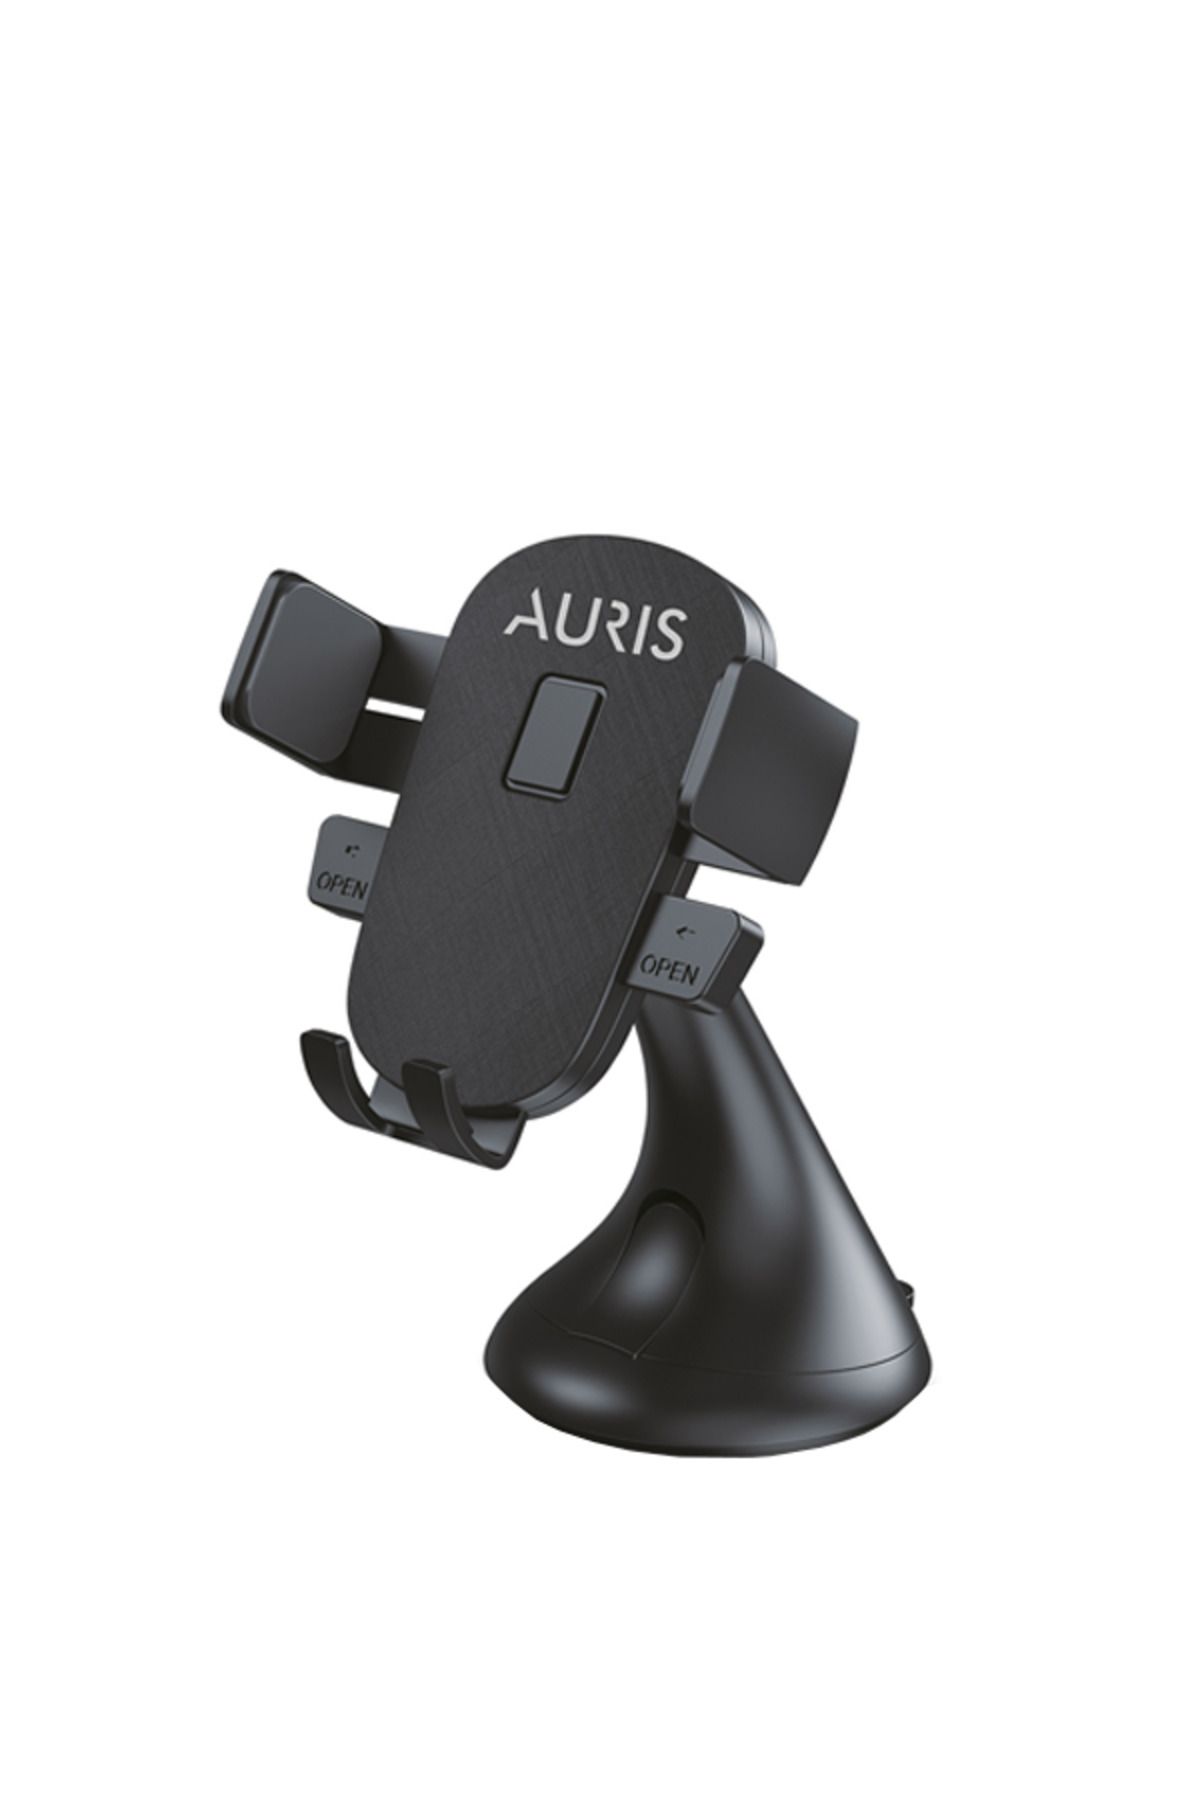 Auris Universal Vantuzlu 360 Derece Ayarlanabilen Araç İçi Telefon Tutucu Tüm Telefon ve Araçla Uyumlu